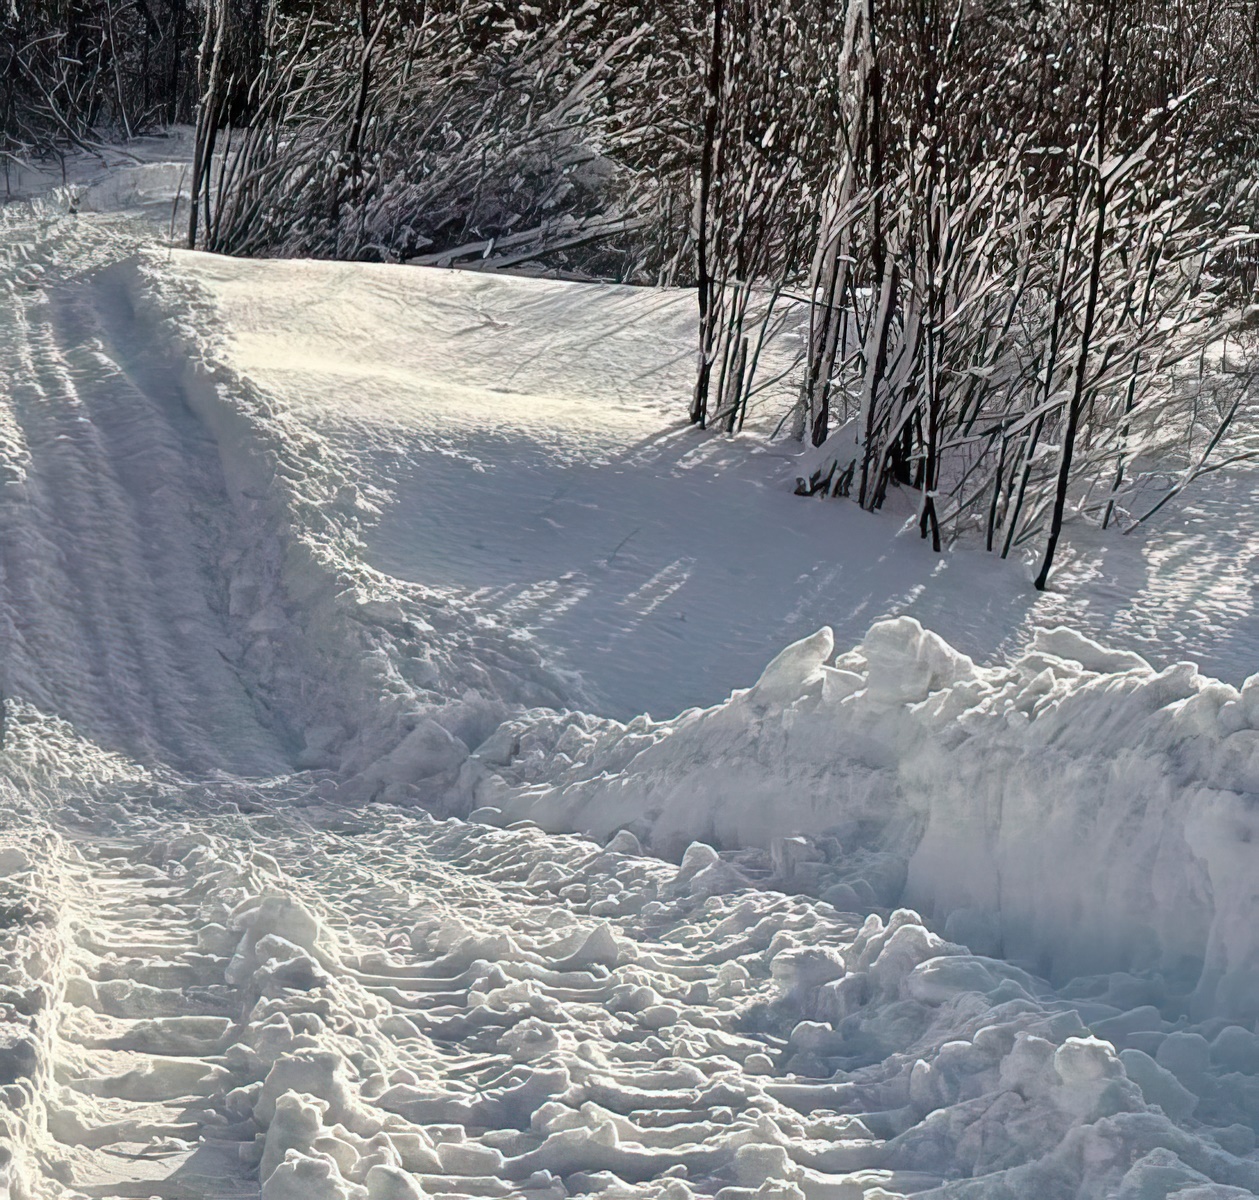 snowy trails